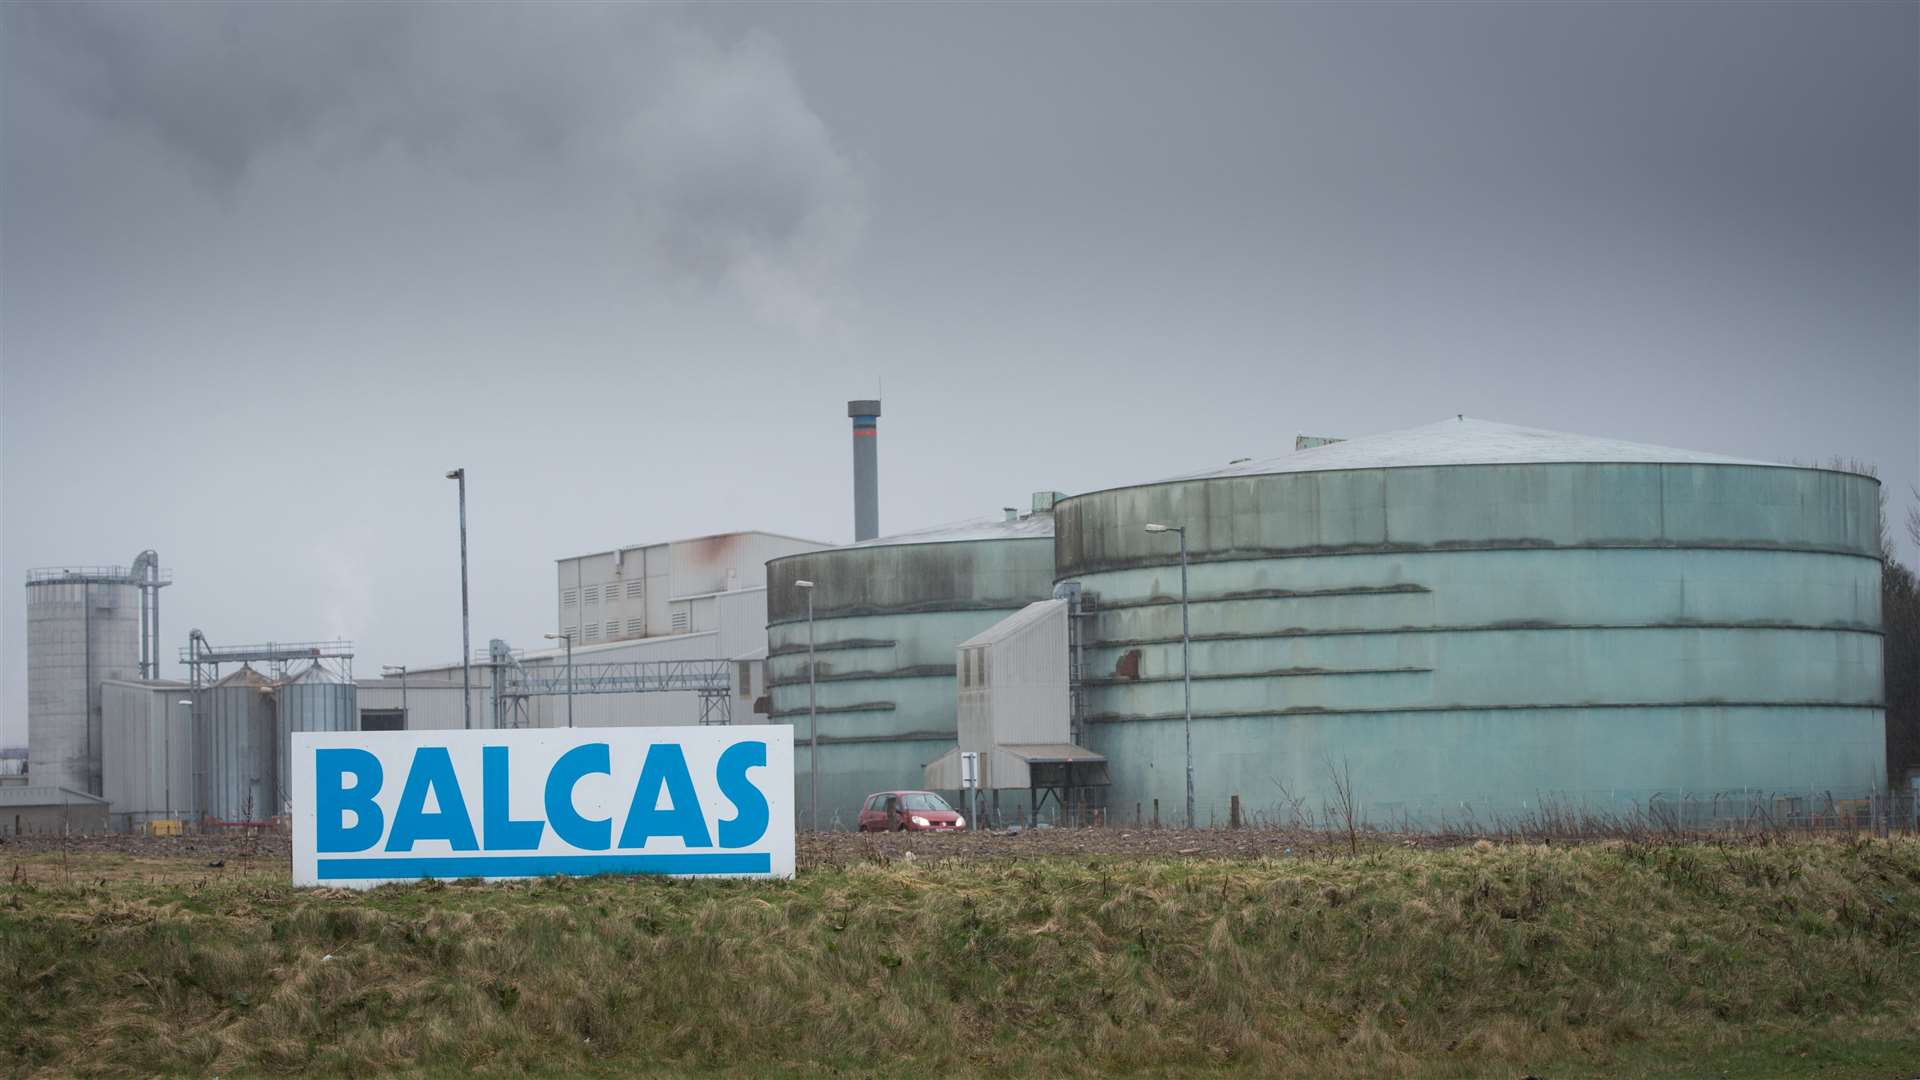 The Balcas plant in Invergordon.